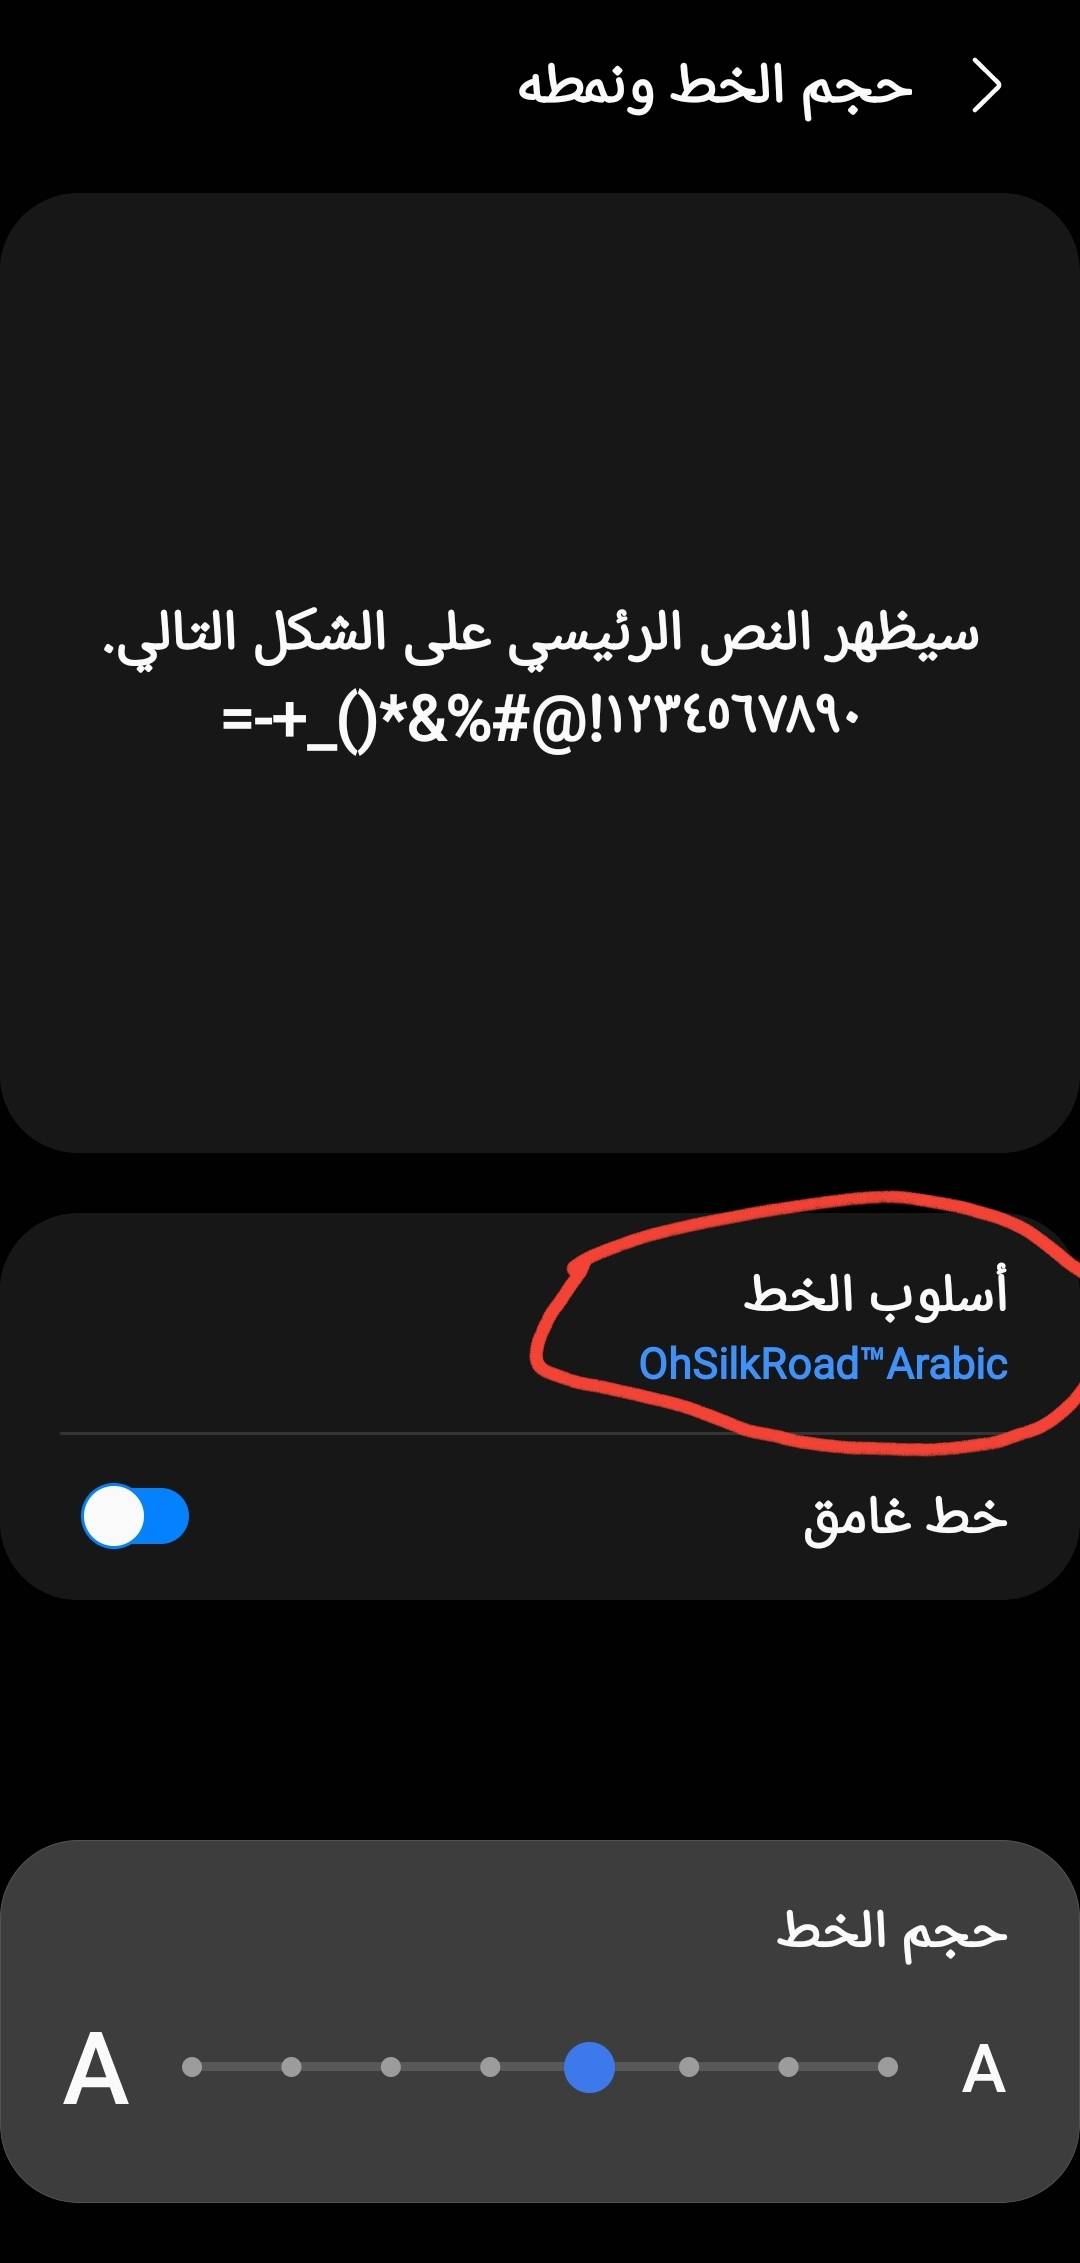 Solved: بدأت سامسونغ في دعم الخطوط العربية في متجرها - Samsung Members